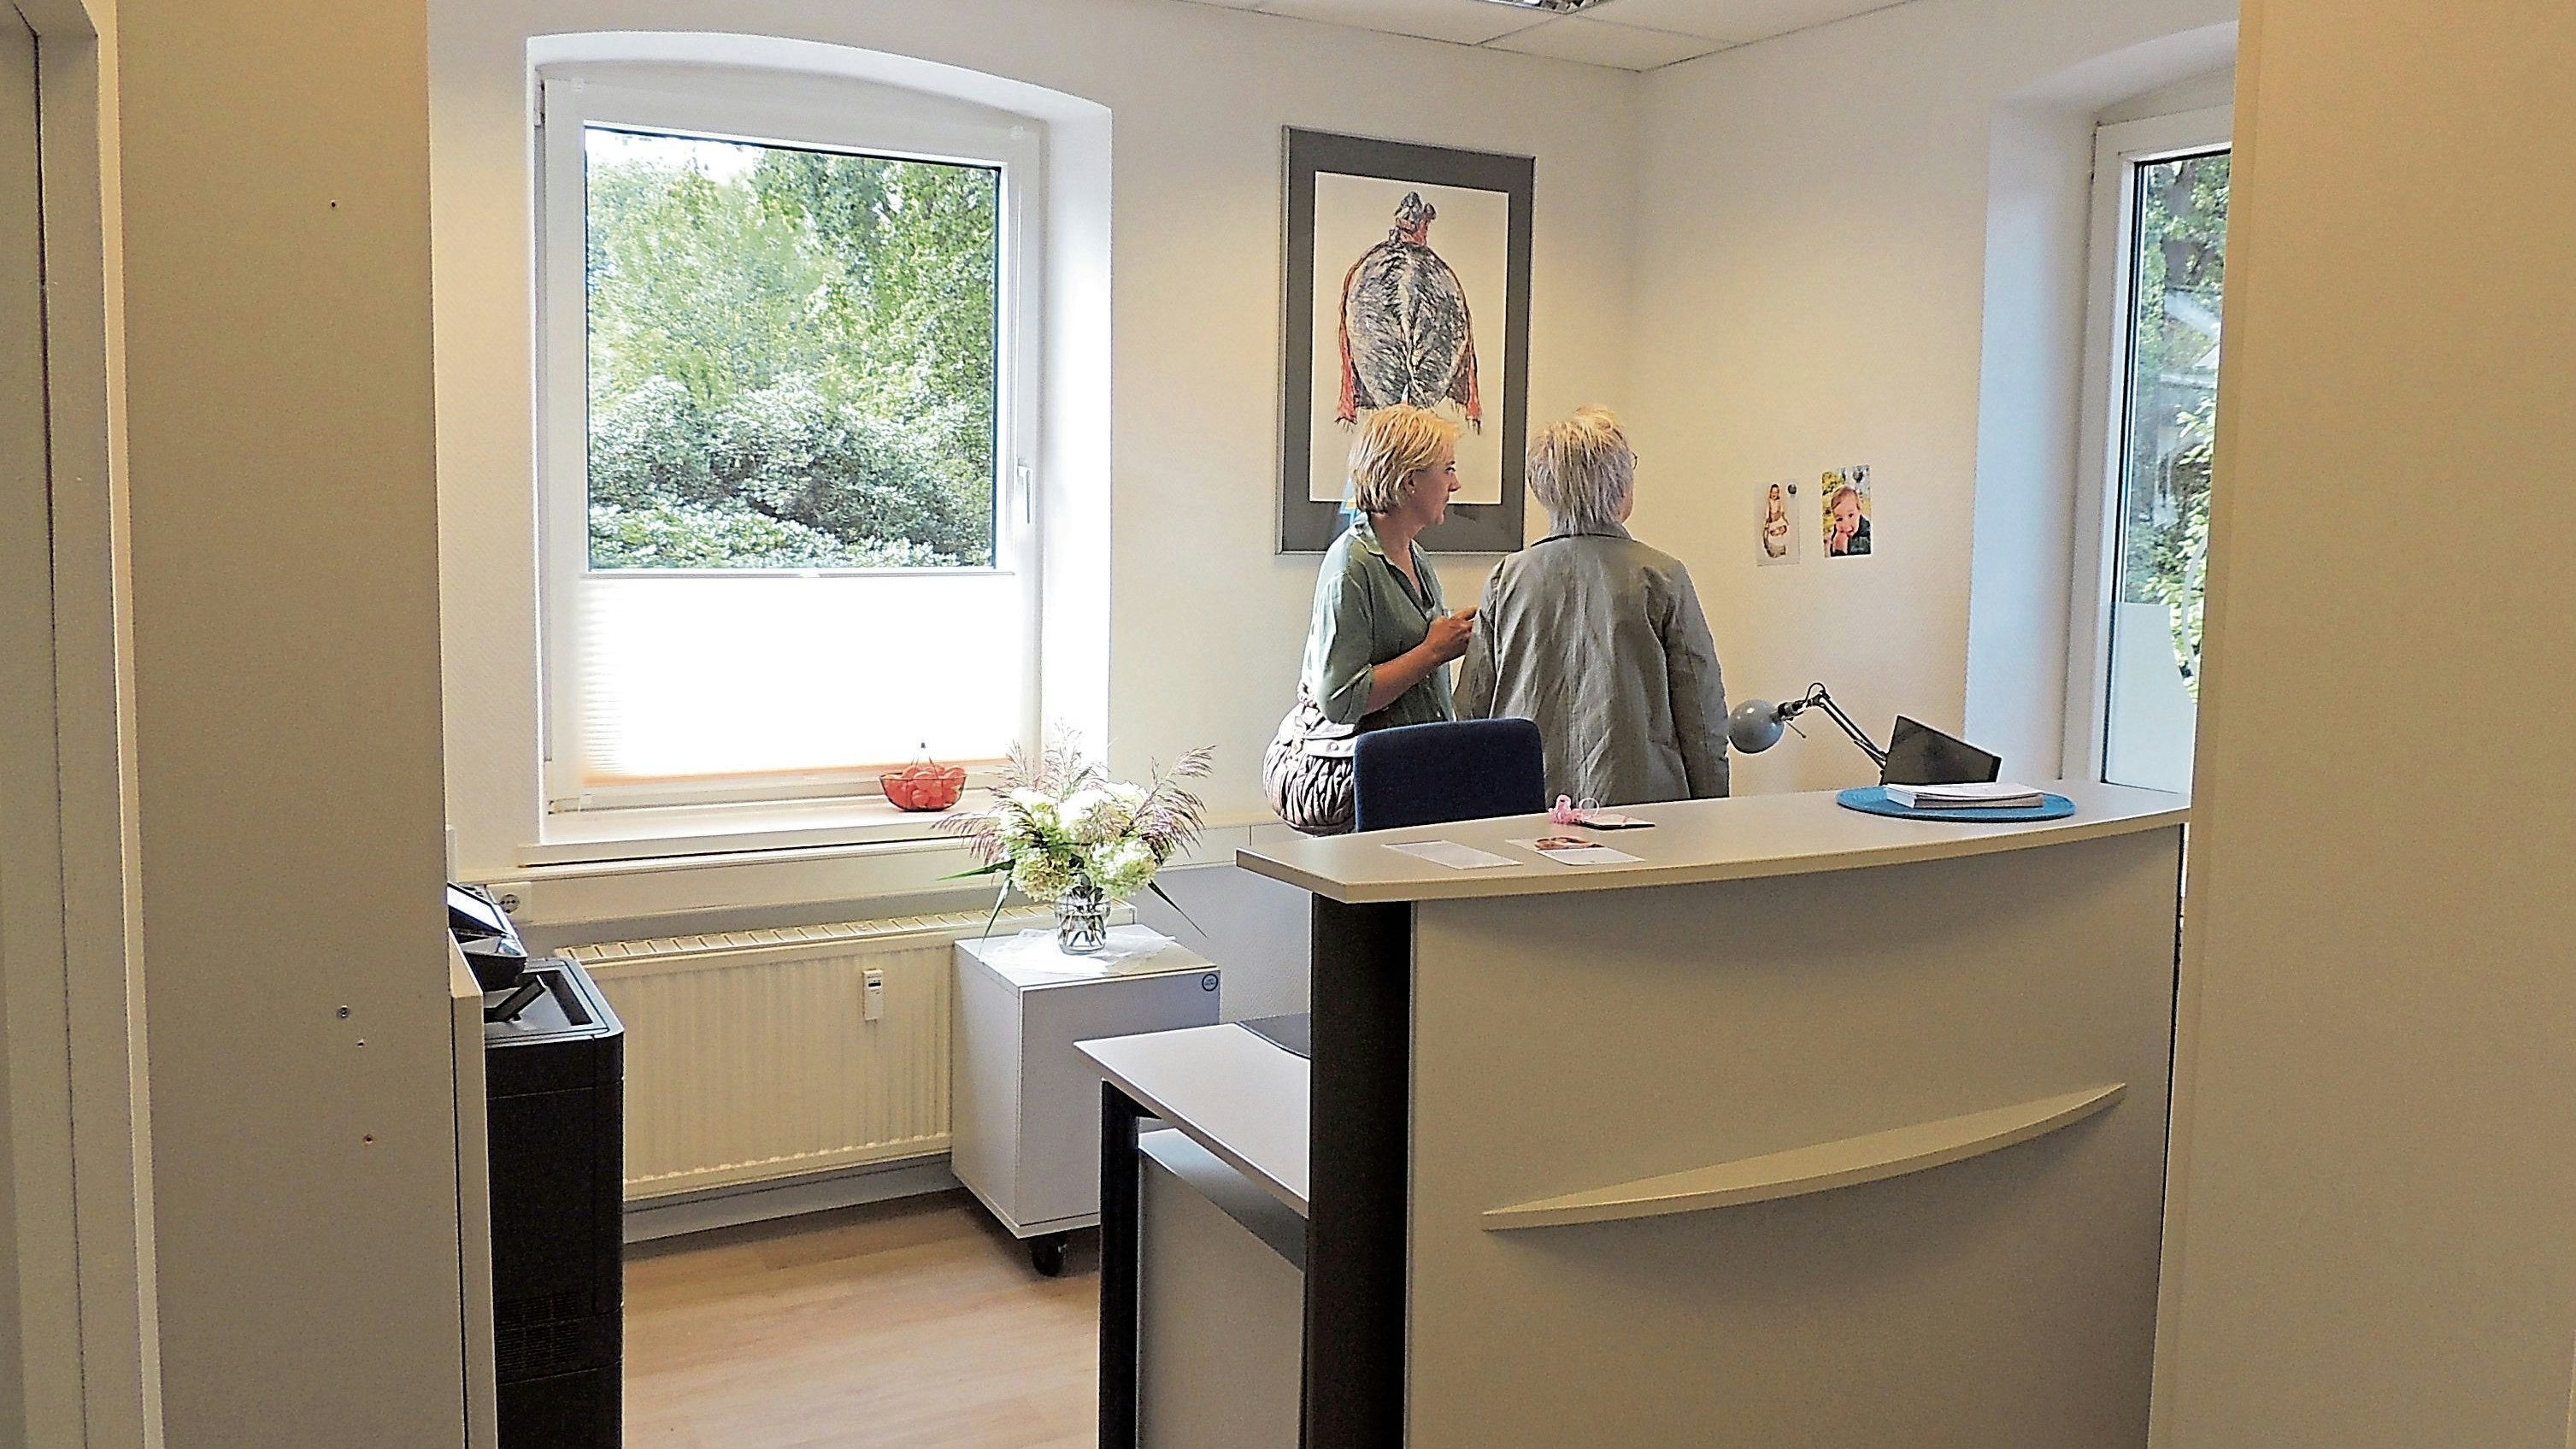 Am neuen Standort: Die Besucher konnten die Räume am Tag der offenen Tür besichtigen. Foto: Morthorst